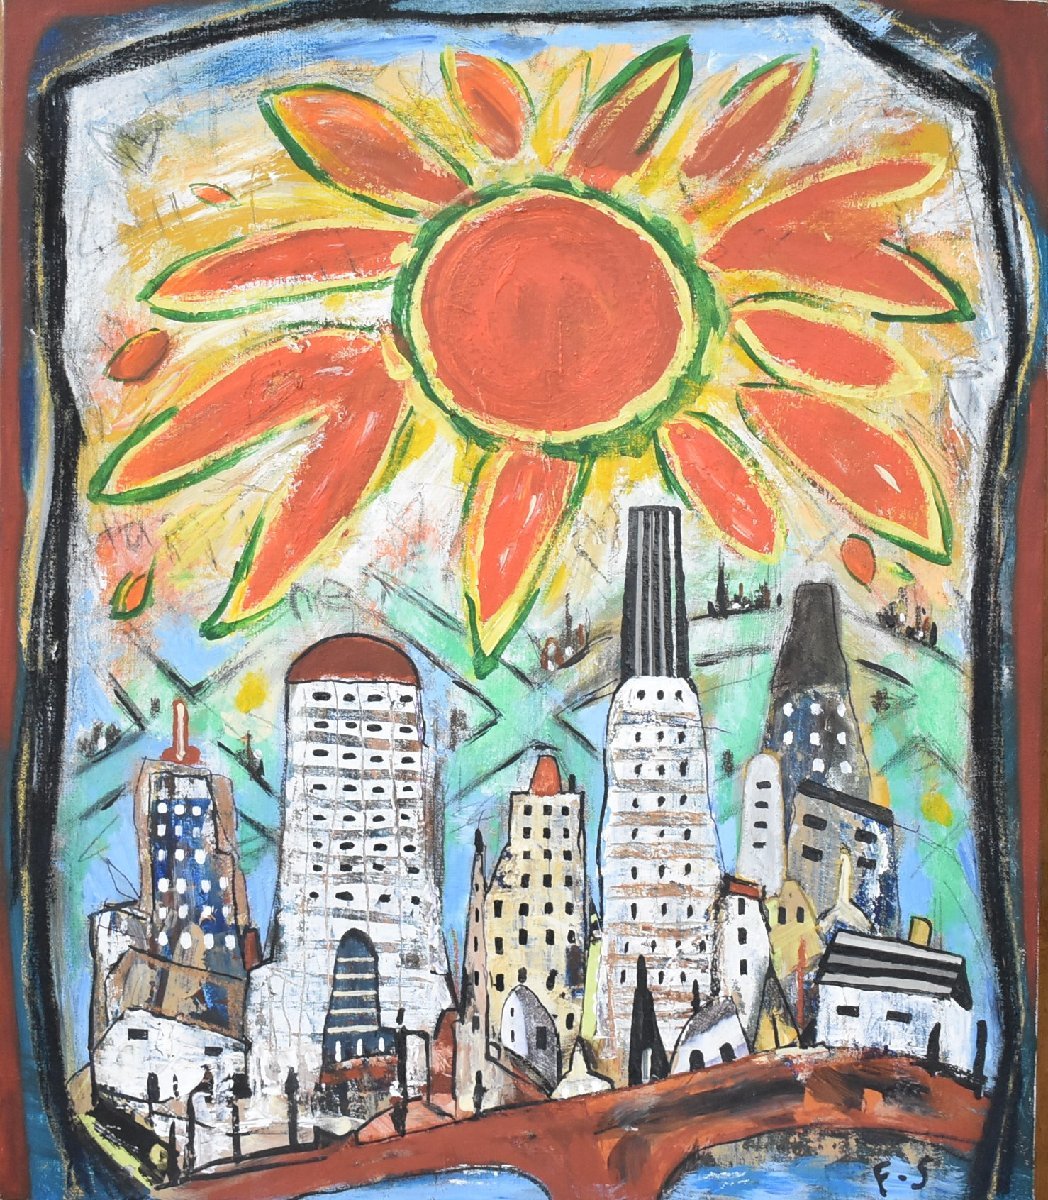 Теплые лучи солнца, льющиеся на экран, изображены в теплых тонах Новая работа популярного западного художника Фудзико Сираи № 10 Bay Area and the Sun [Seiko Gallery], рисование, картина маслом, Природа, Пейзаж